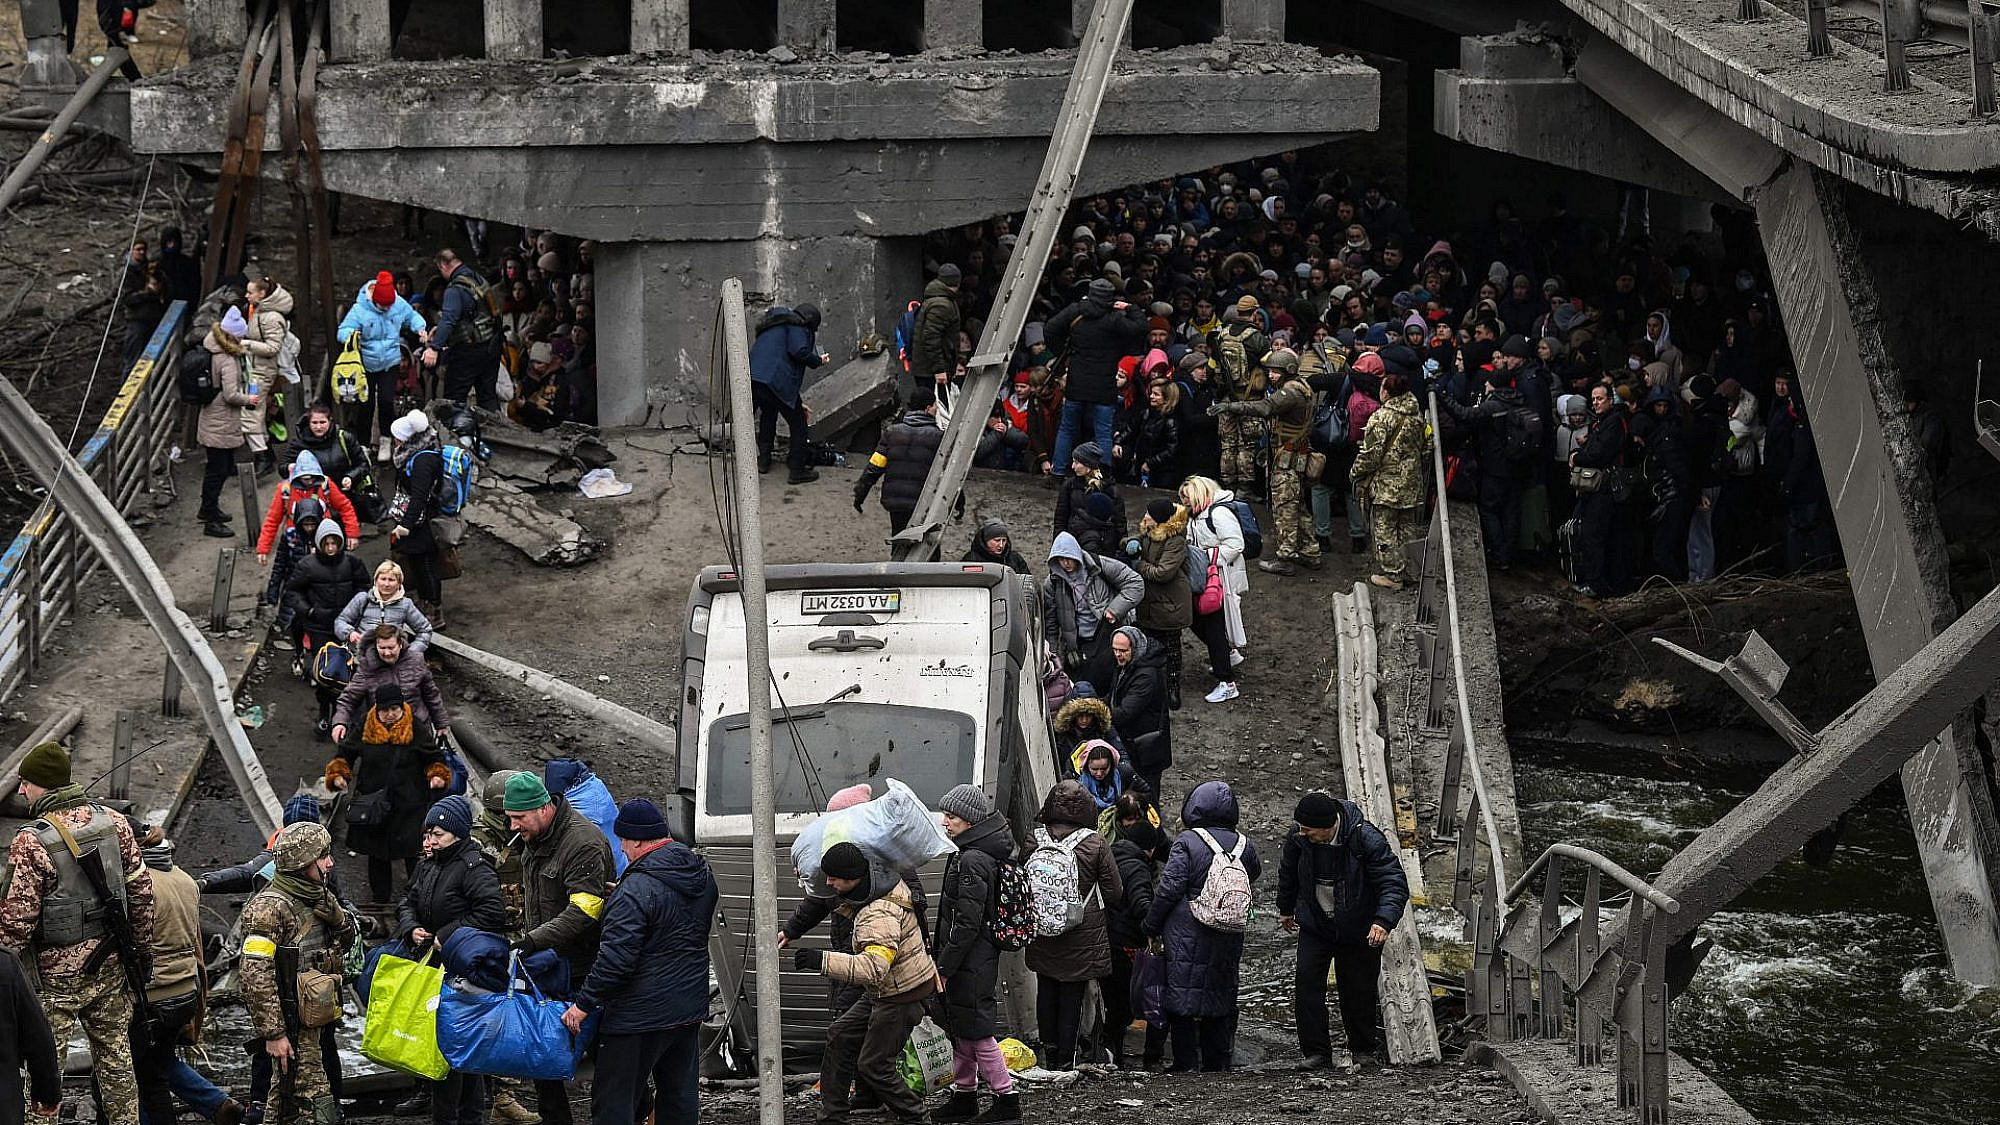 עזרה בדרך? פליטים אוקראינים נמלטים מהעיר המופצצת (צילום: גטי אימג'ס)